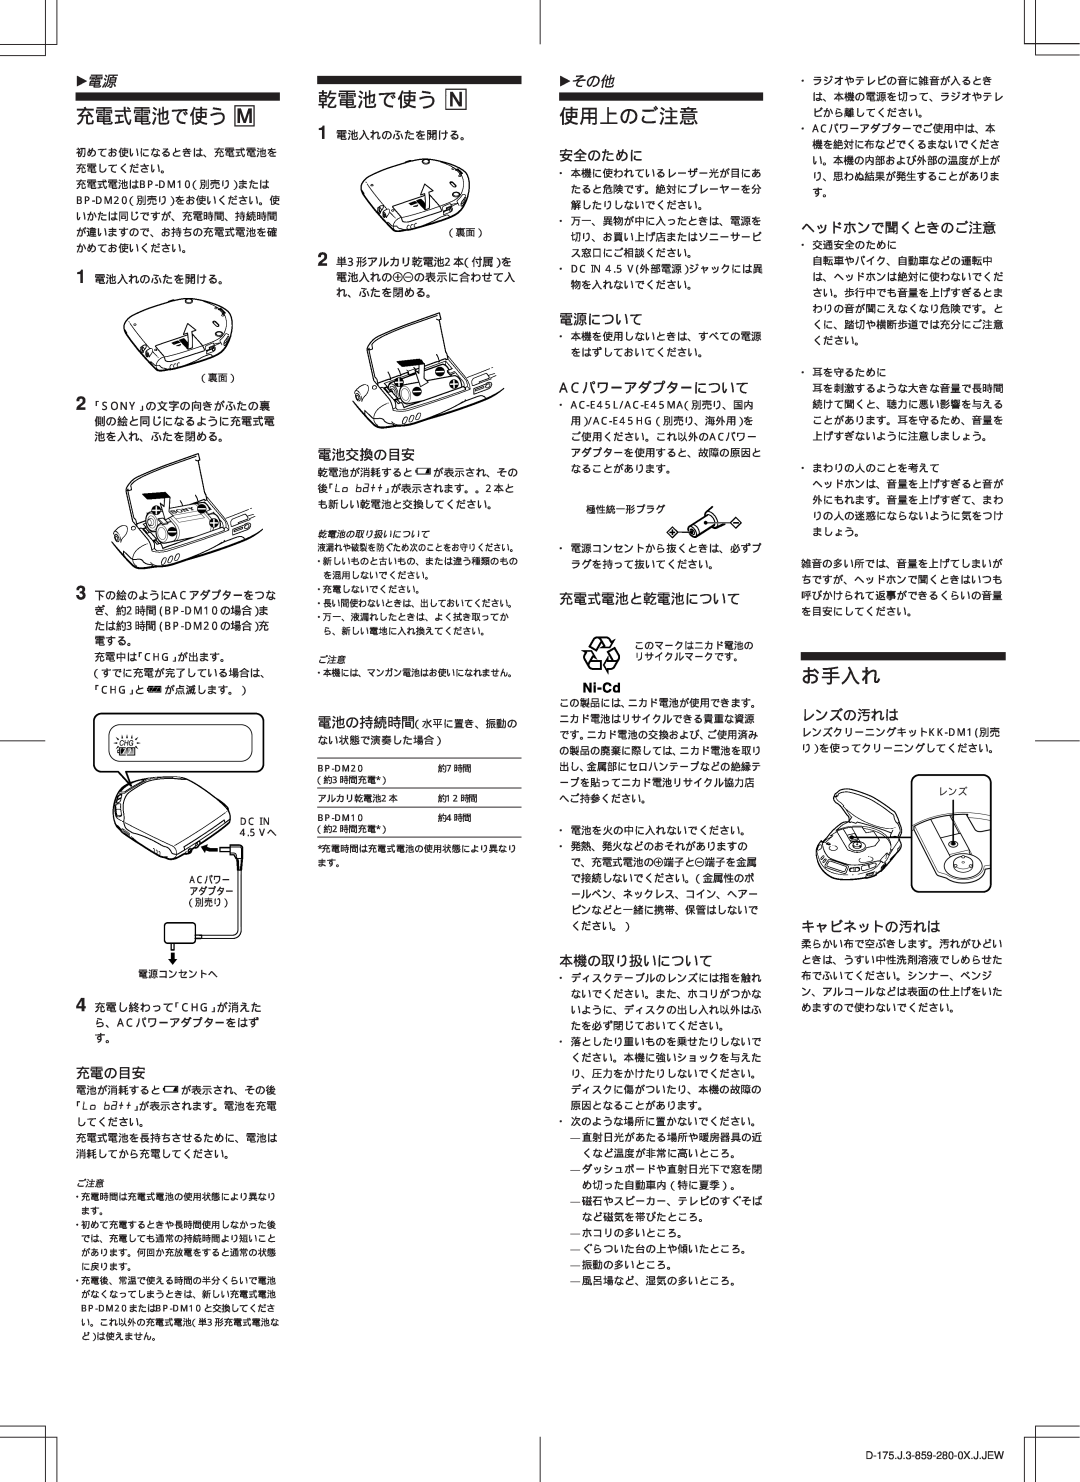 Sony D-170AN manual 充電式電池で使う M, 乾電池で使う N, 使用上のご注意, お手入れ, zその他 